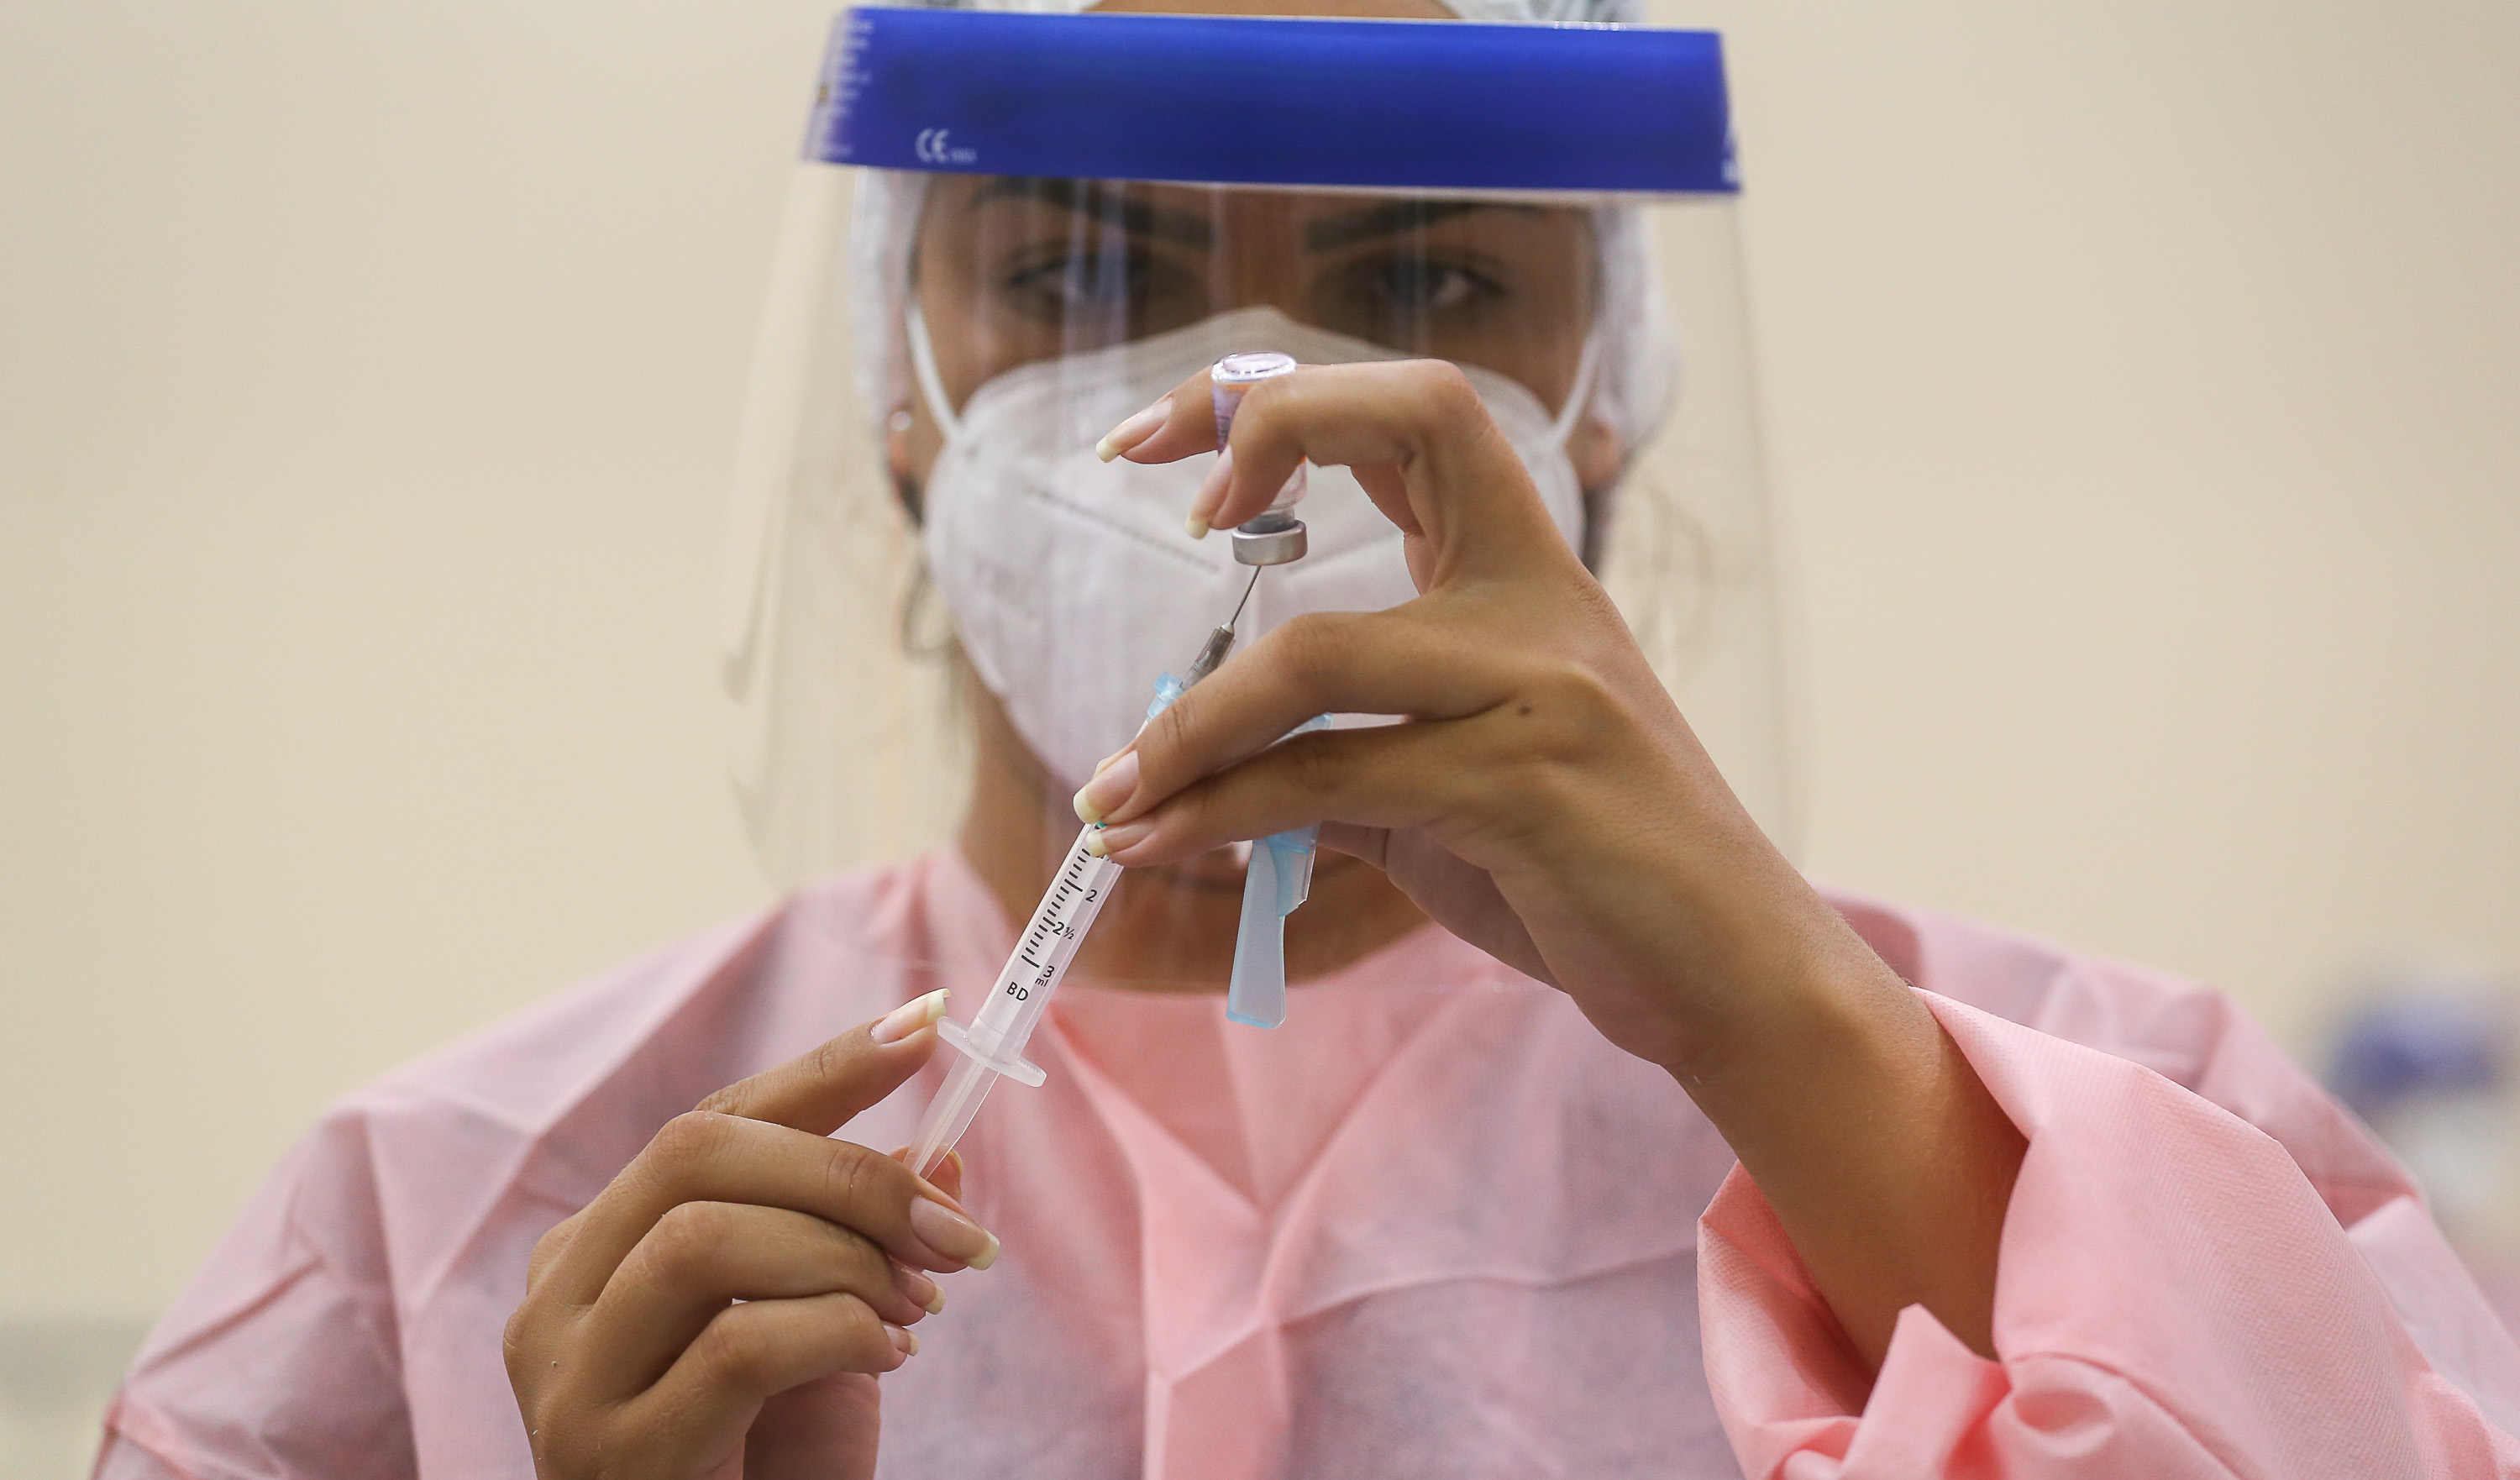 enfermeia usando EPIs manuseia uma seringa de vacina contra covid